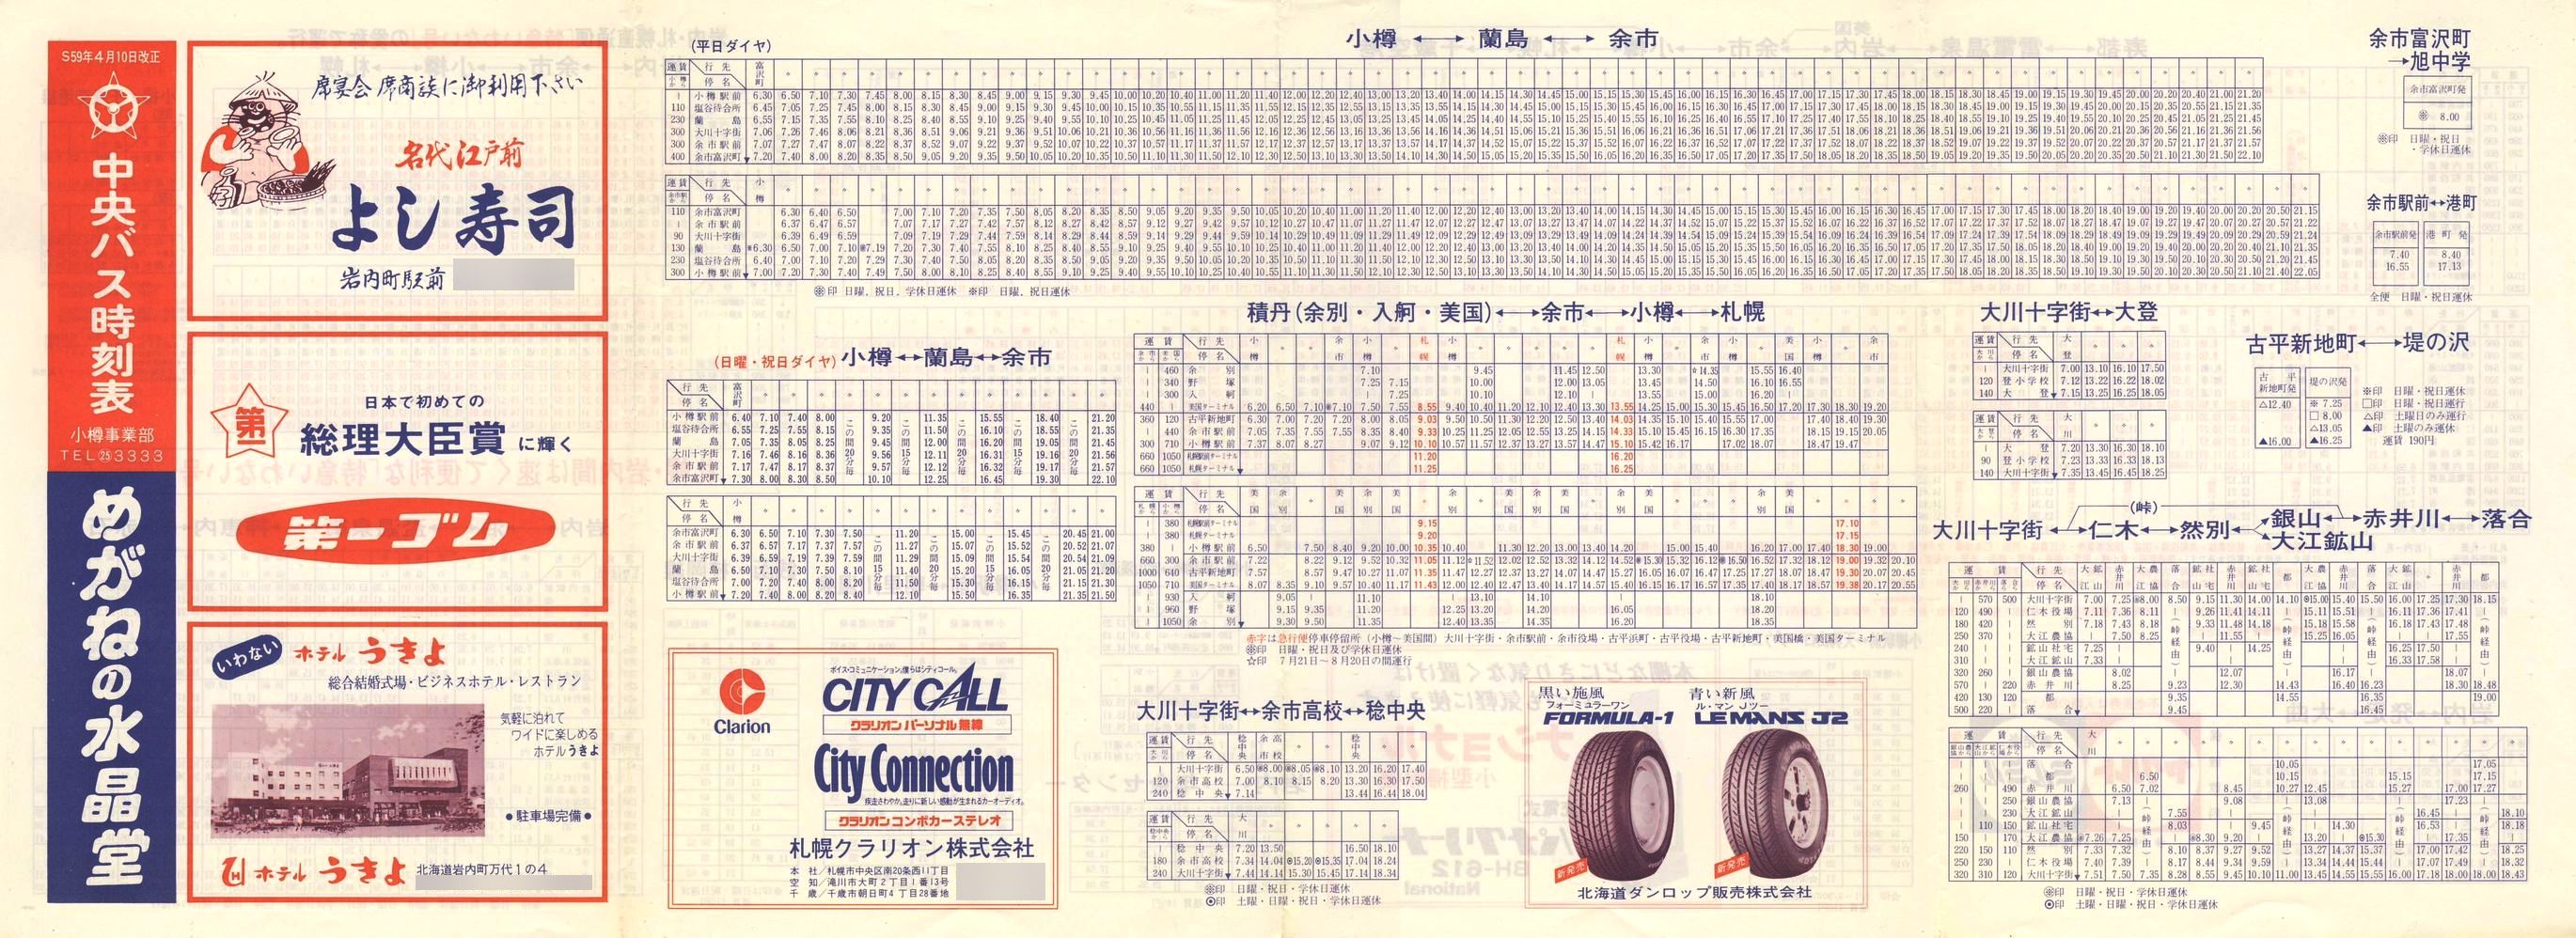 1984-04-10改正_北海道中央バス(小樽)_小樽事業部管内郊外線時刻表表面